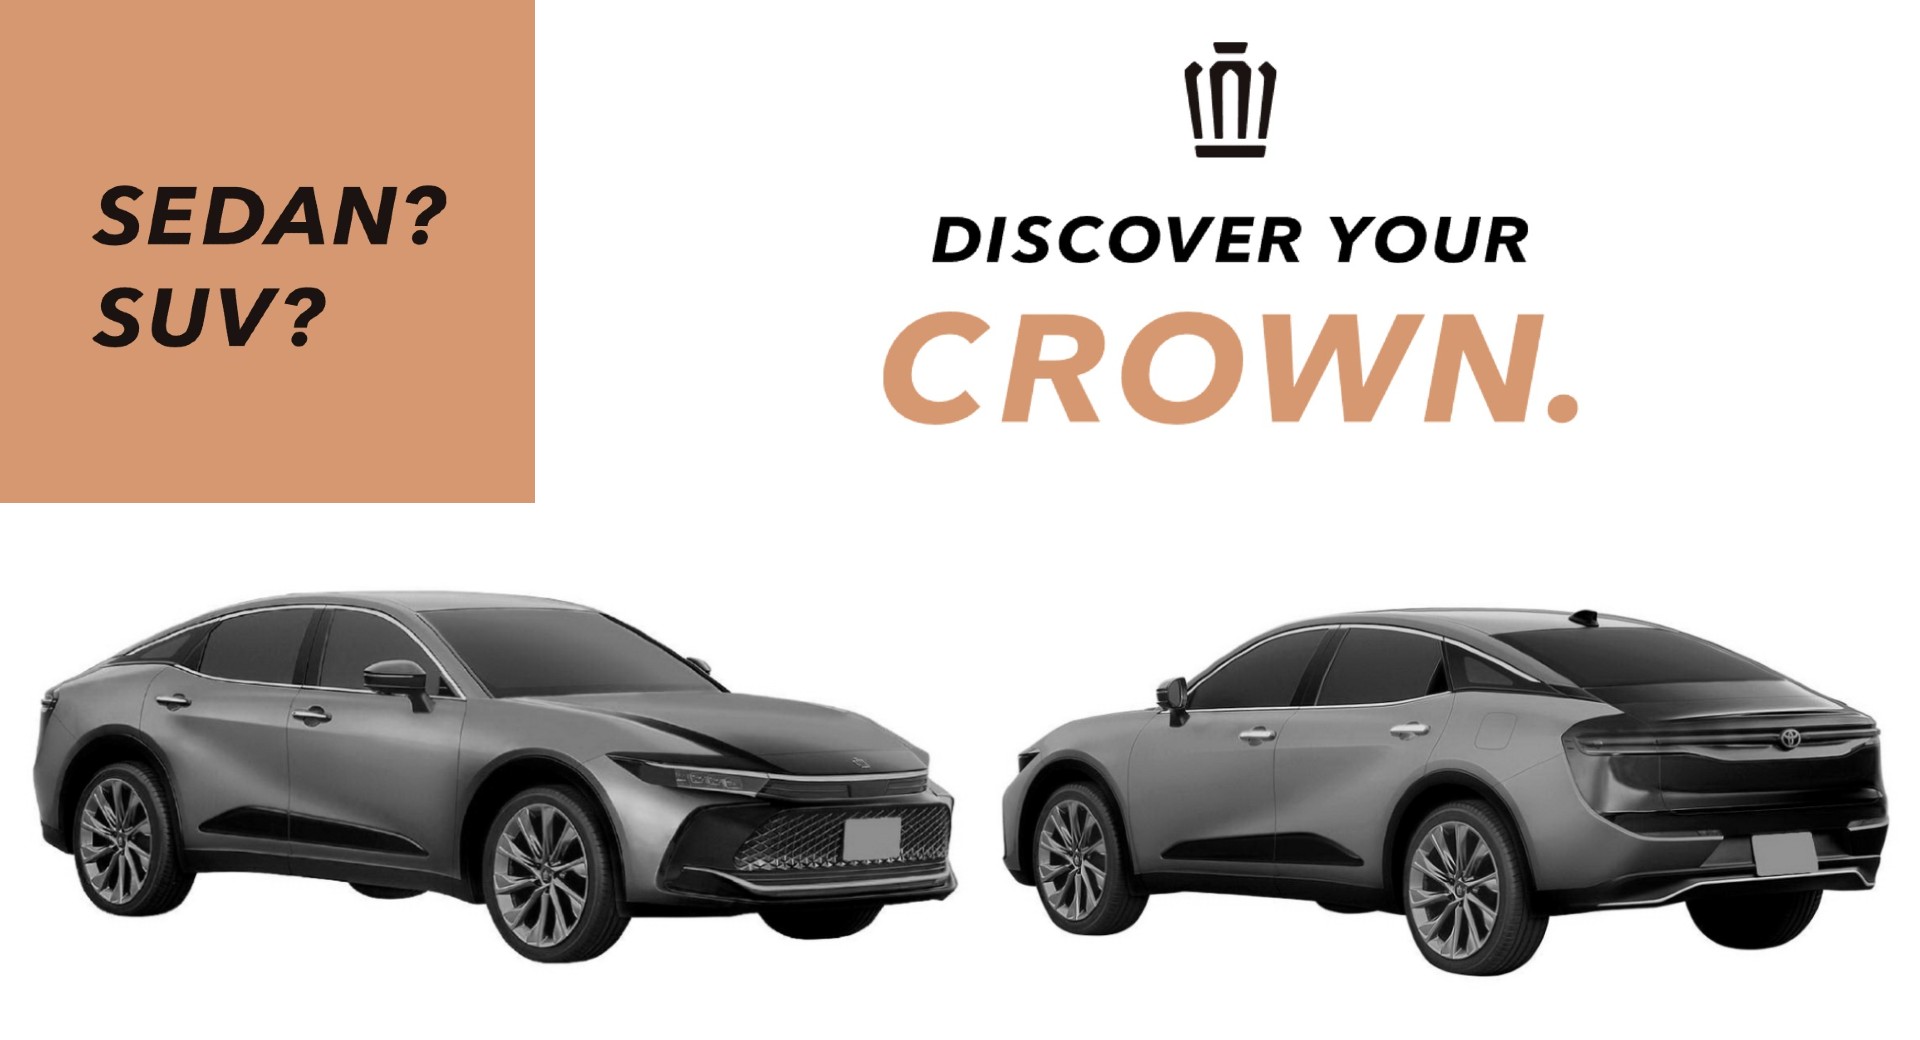 Toyota Crown 2023 tung ảnh nhá hàng, ra mắt trong tháng 7 này 2023-toyota-crown-3.jpg